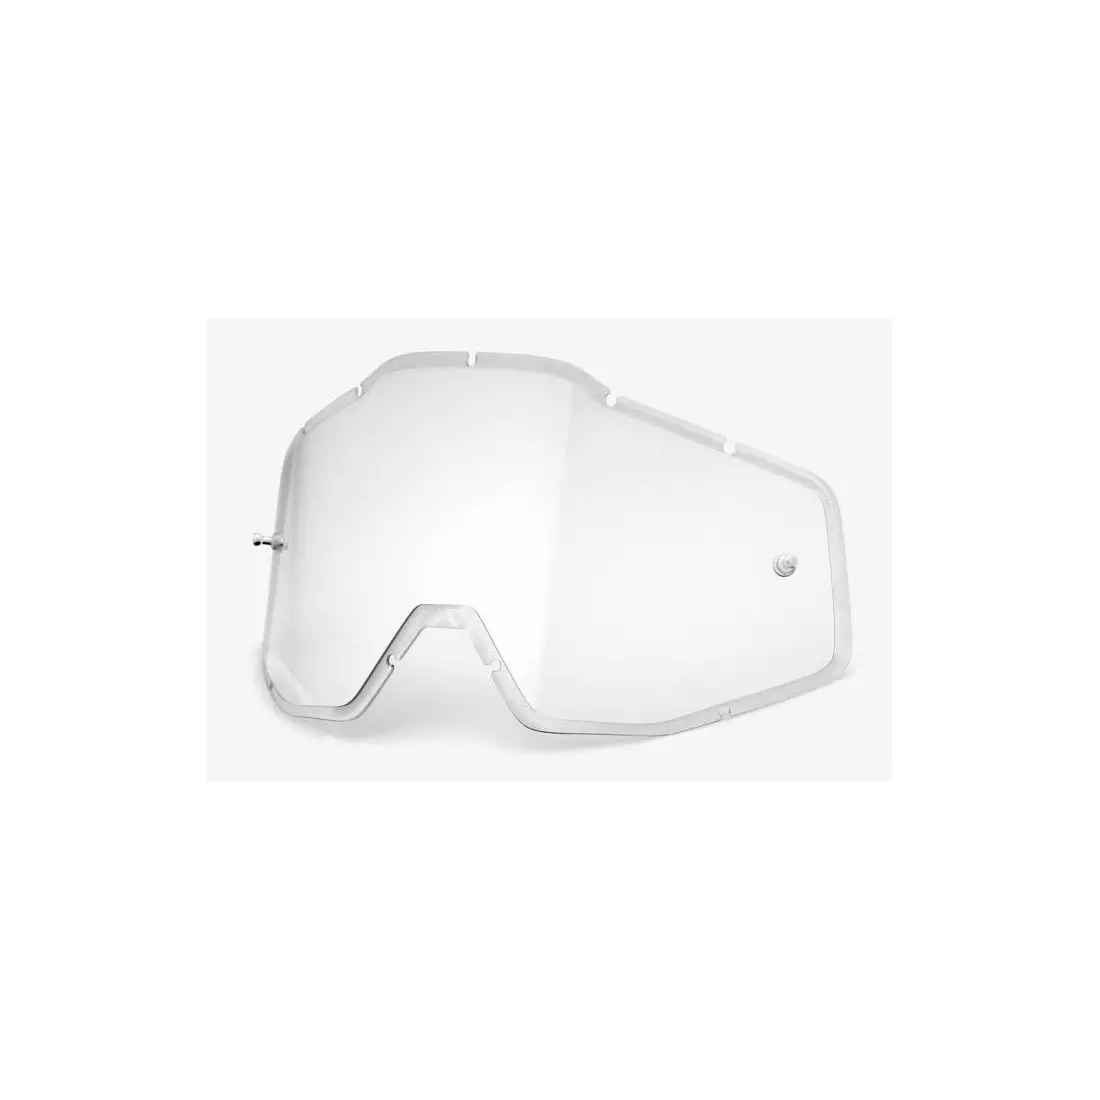 100% brýlová čočka racecraft/accuri/strata (průhledné sklo HD double Anti-Fog) STO-51004-010-02